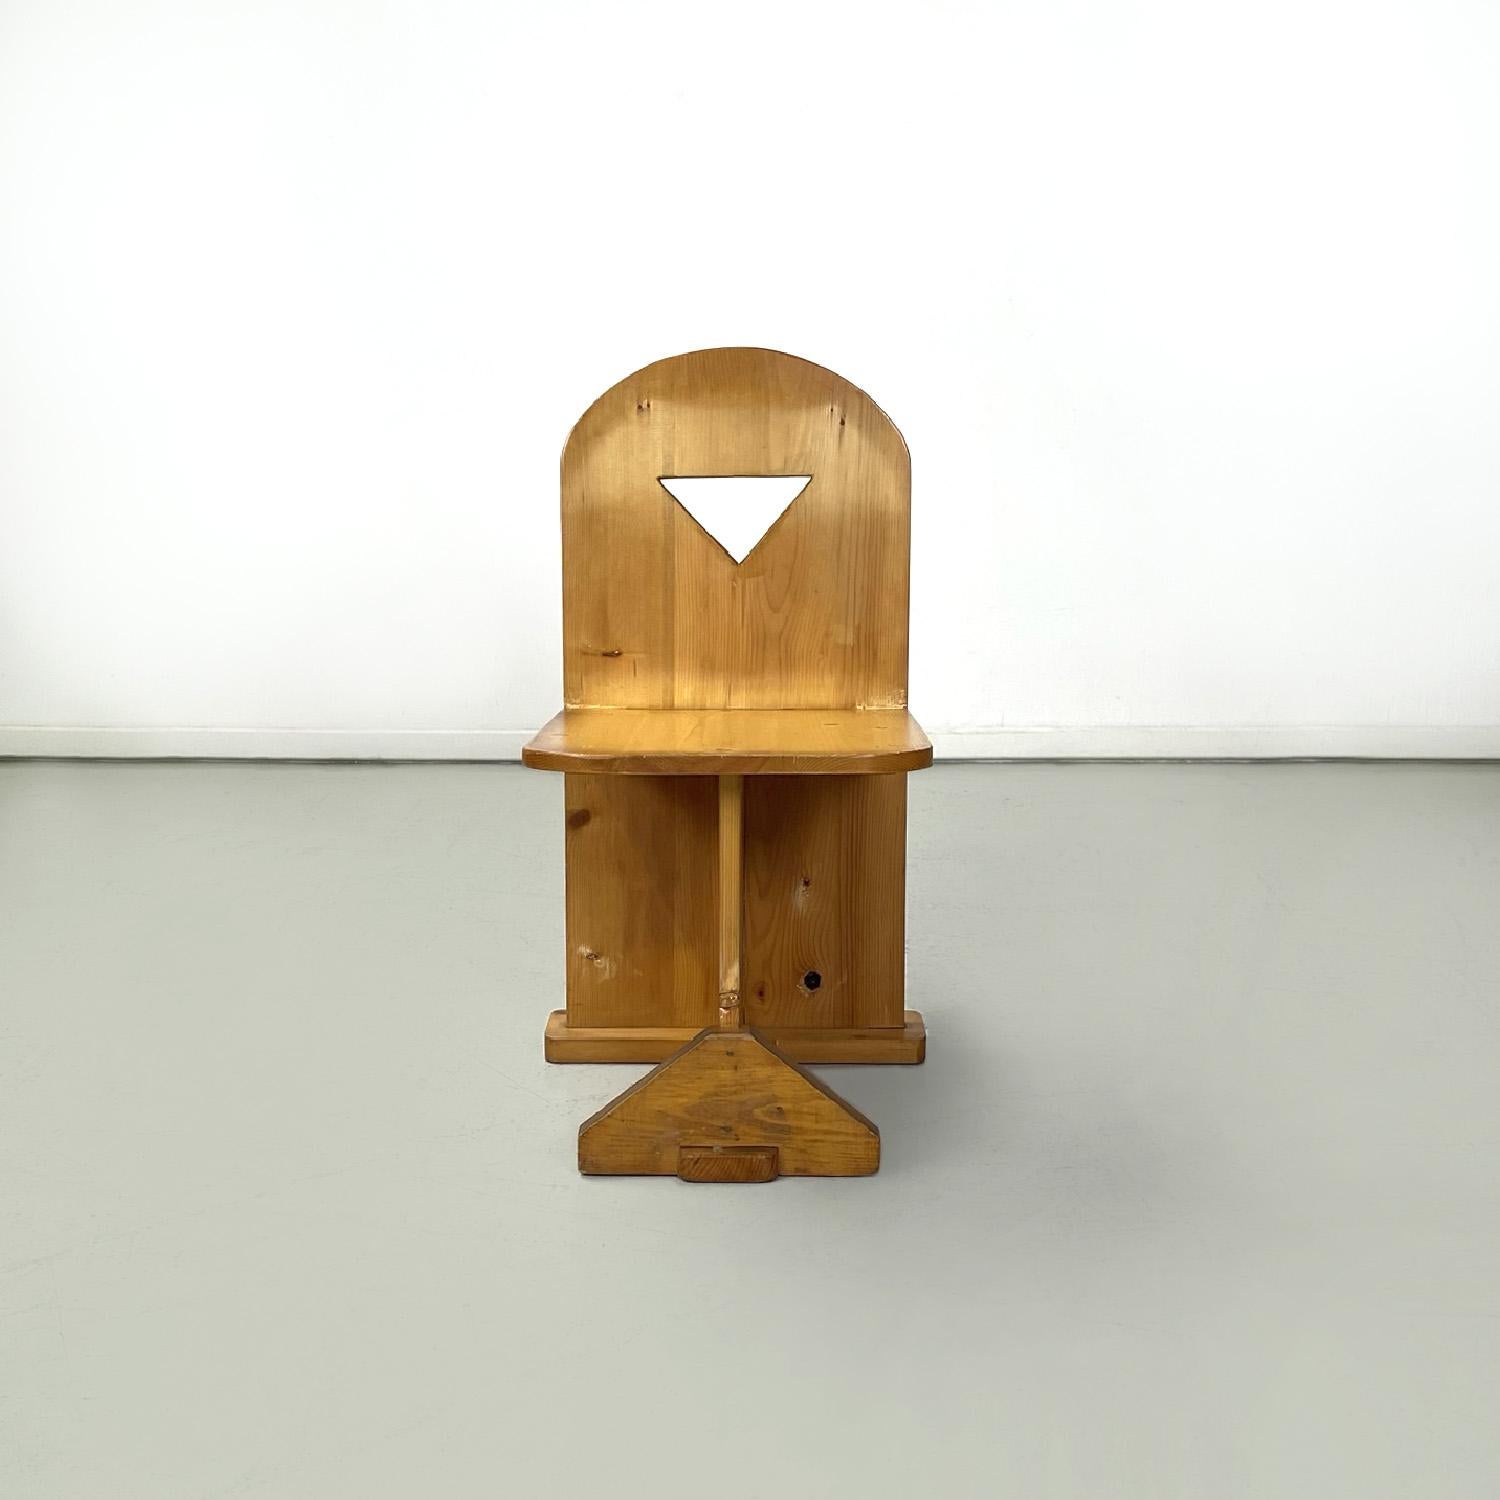 Chaises modernes italiennes en bois avec trous triangulaires, années 1980
Ensemble de six chaises entièrement en bois. L'assise est rectangulaire avec les deux coins avant arrondis, le dossier se termine par un demi-cercle et présente un trou en